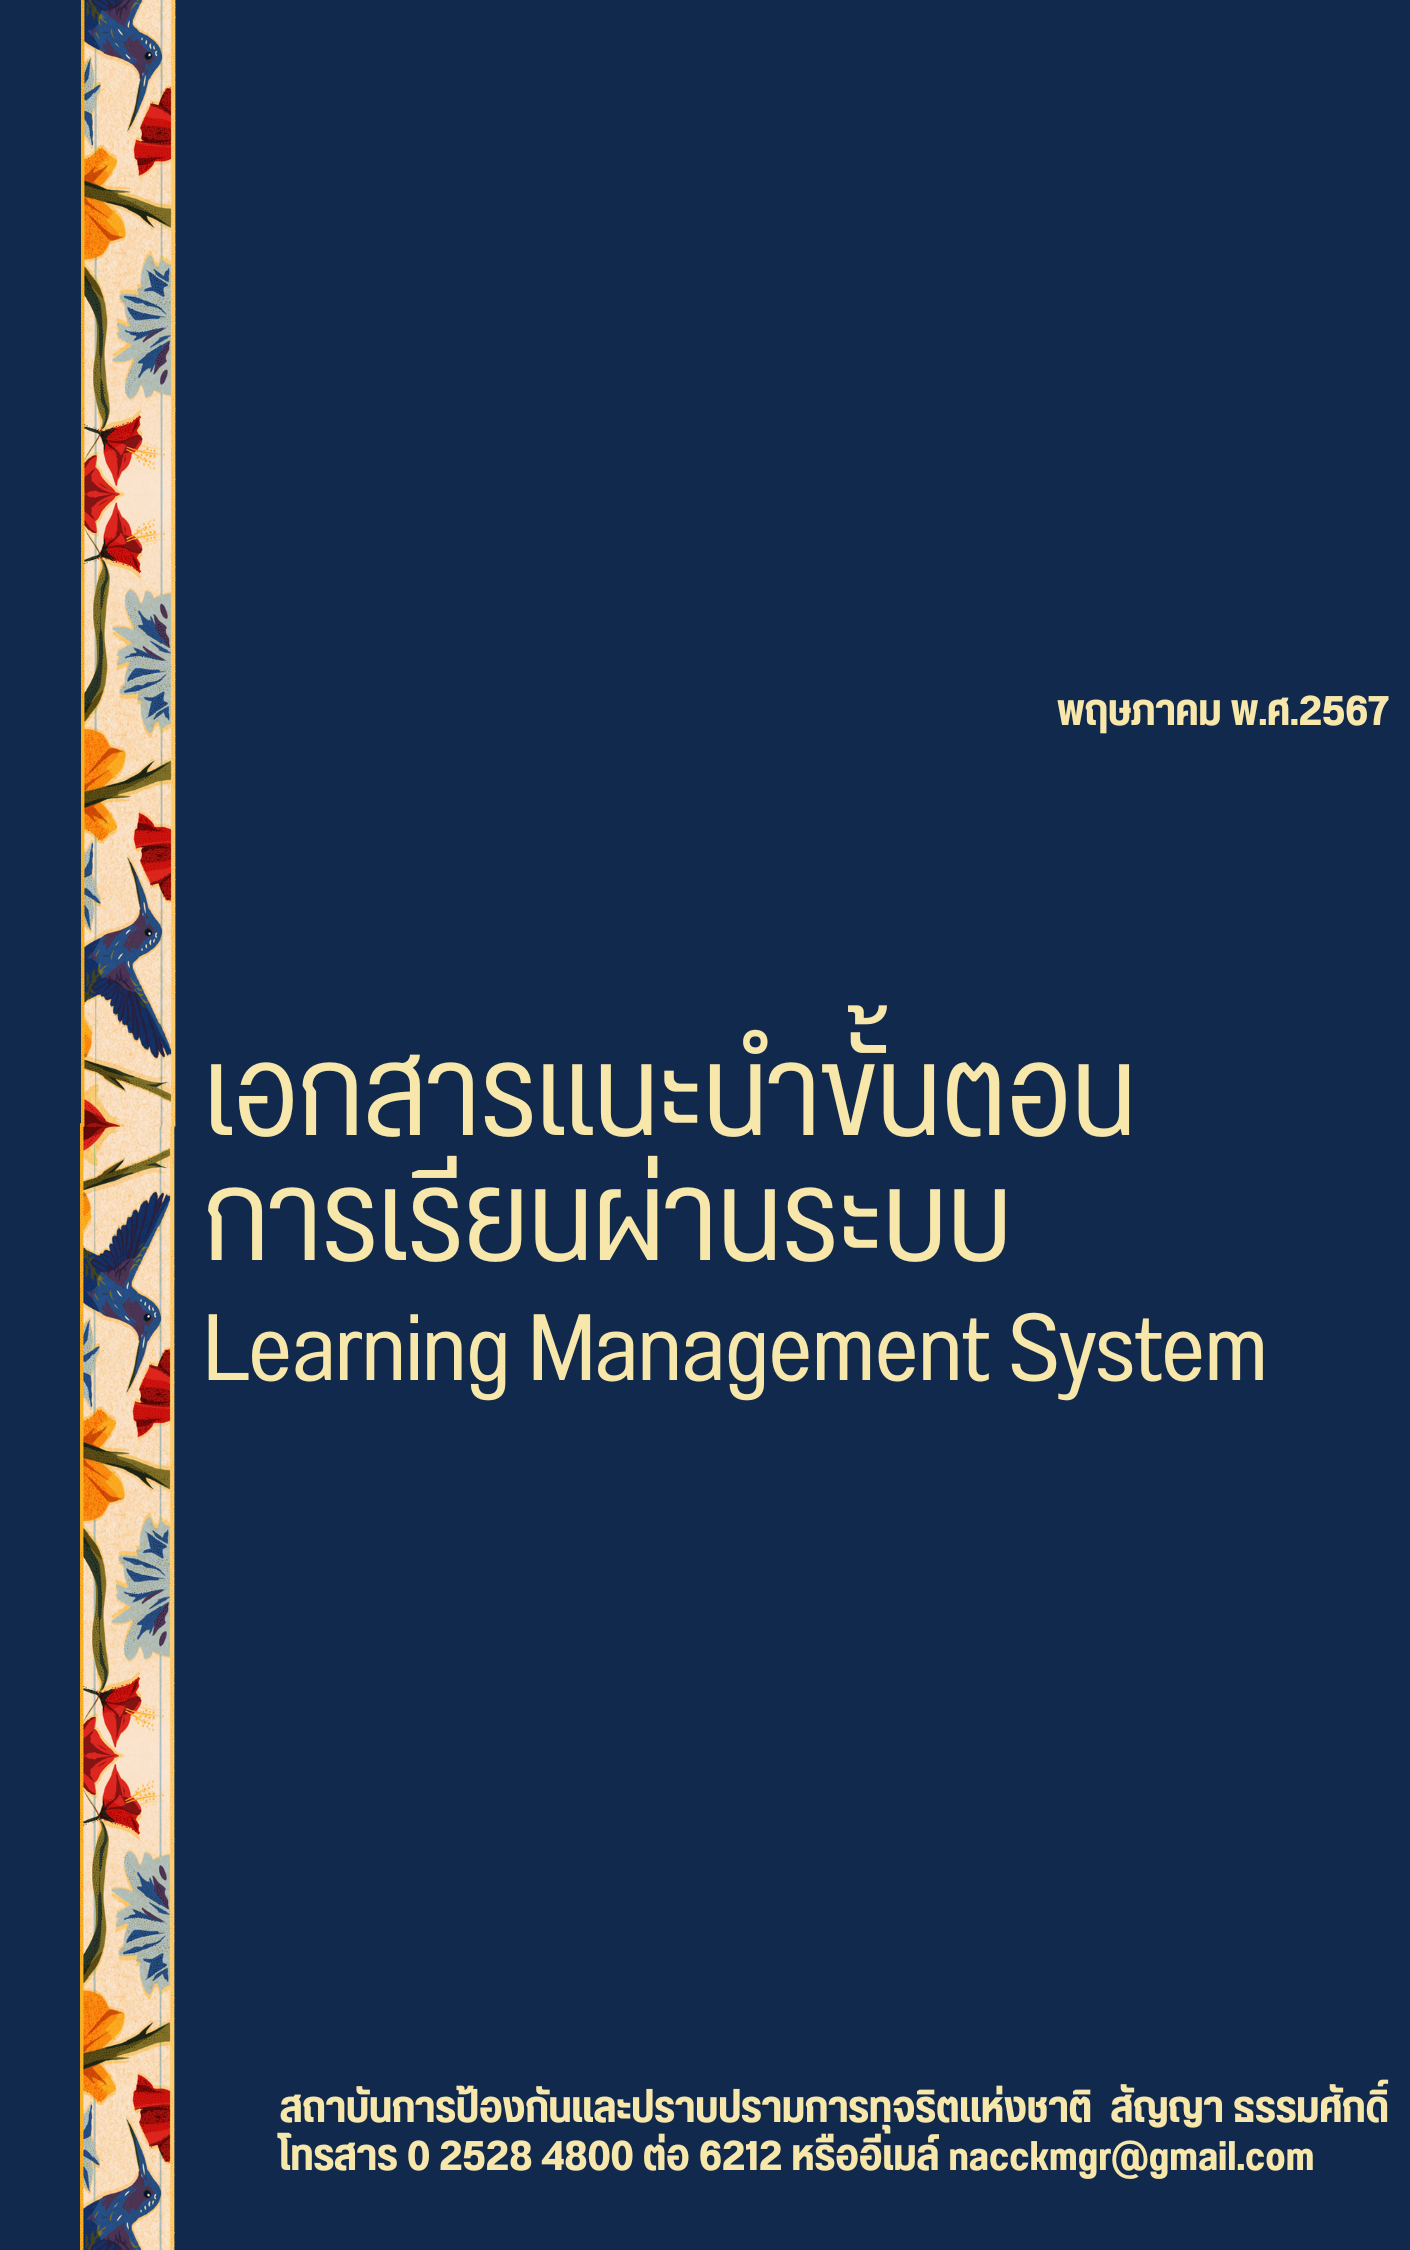 เอกสารแนะนำขั้นตอน การเรียนผ่านระบบ Learning Management System (LMS)